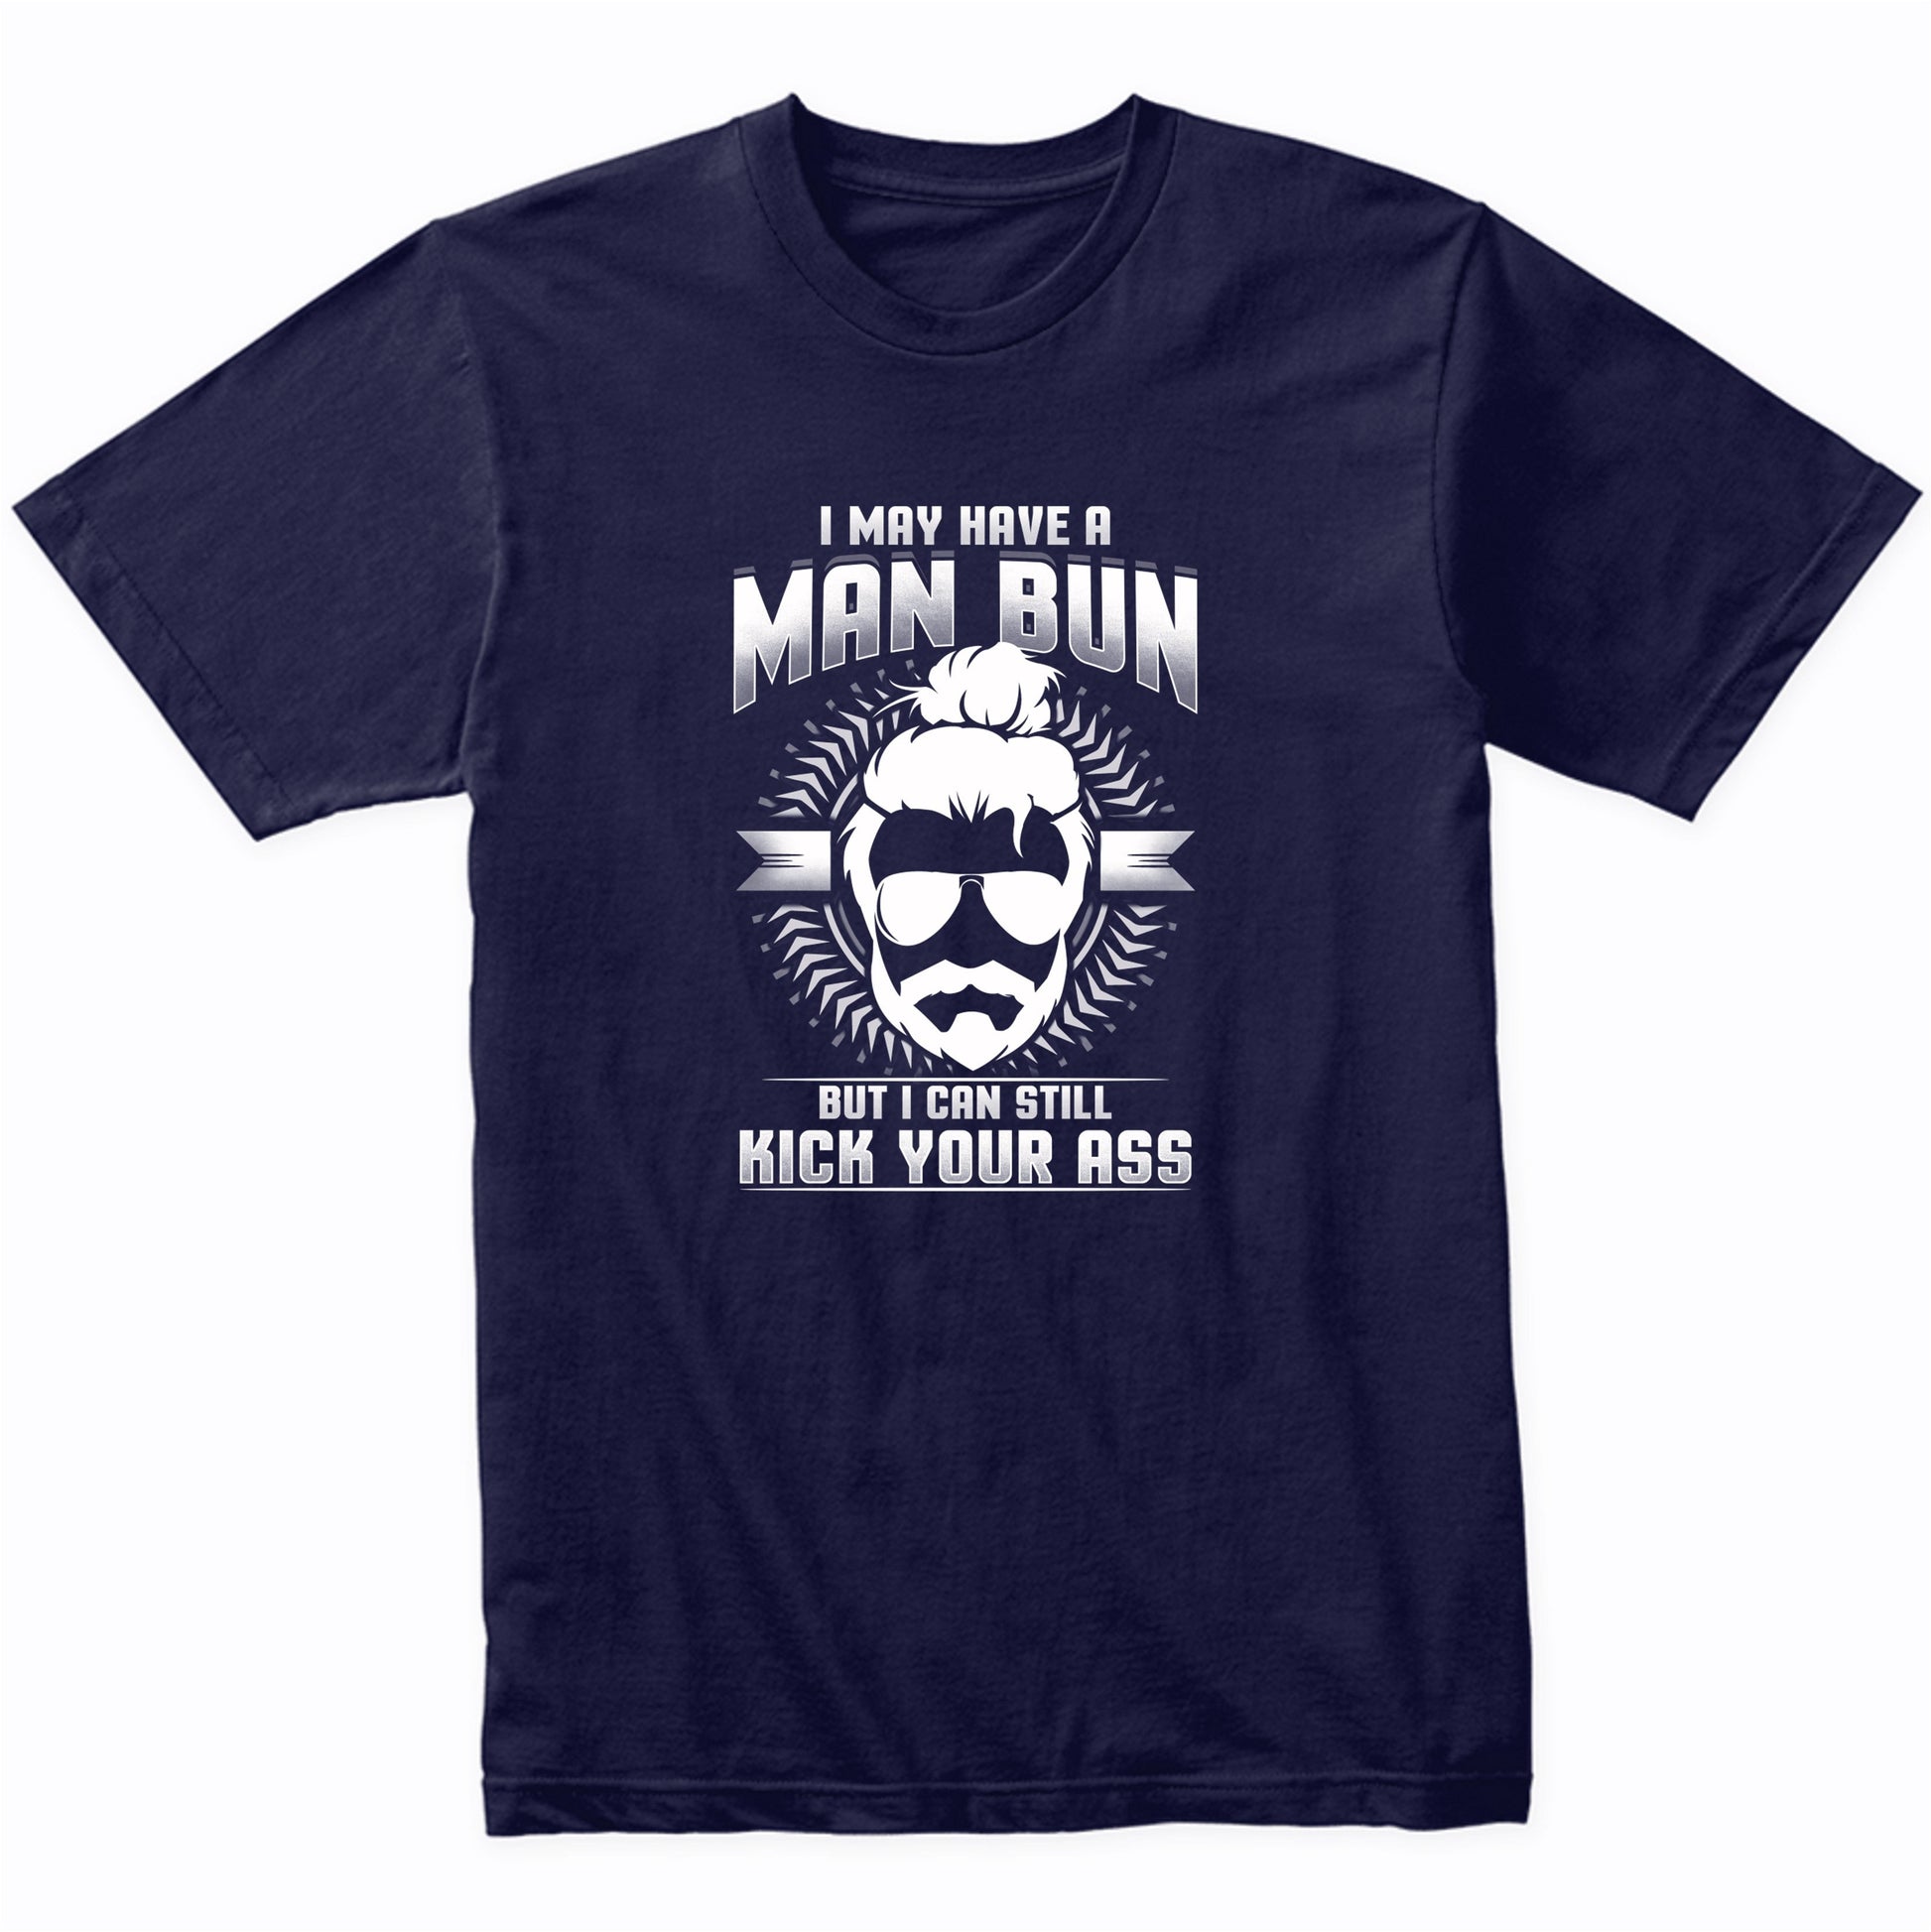 Man Bun Shirt - I May Have A Man Bun But I Can Still Kick Your Ass Funny T-Shirt